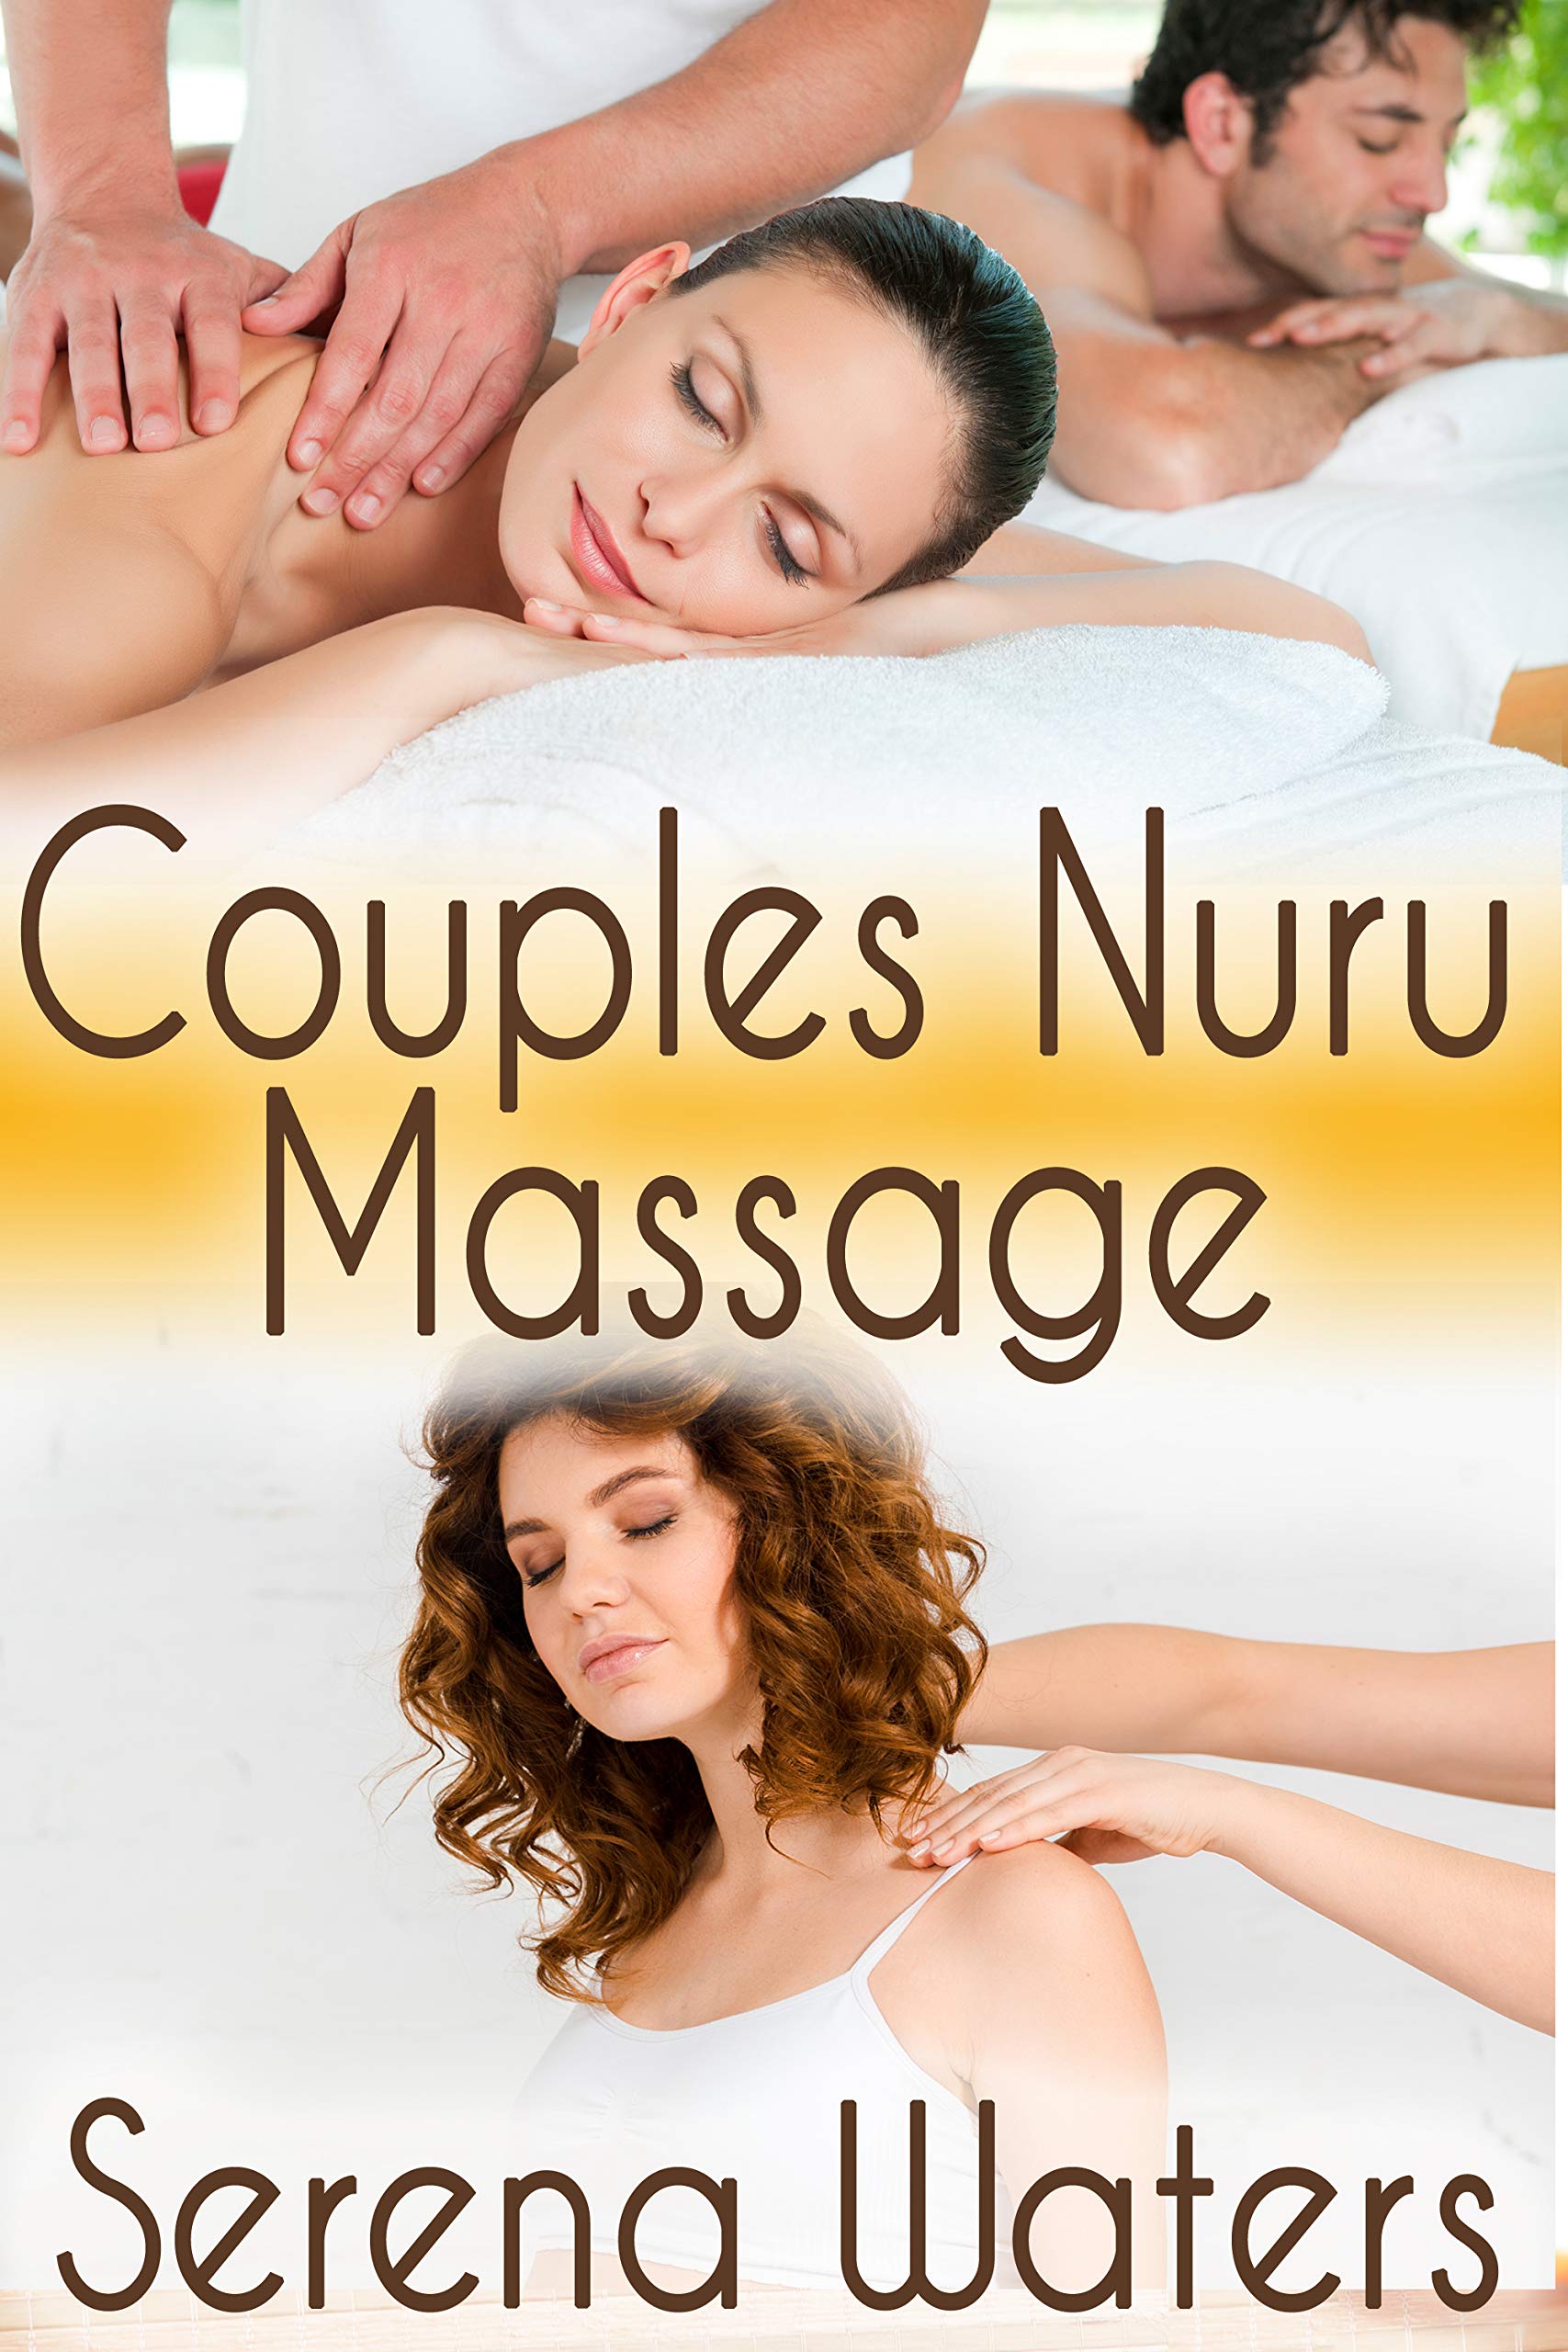 Nuru Massage For Women massage kungsholmen